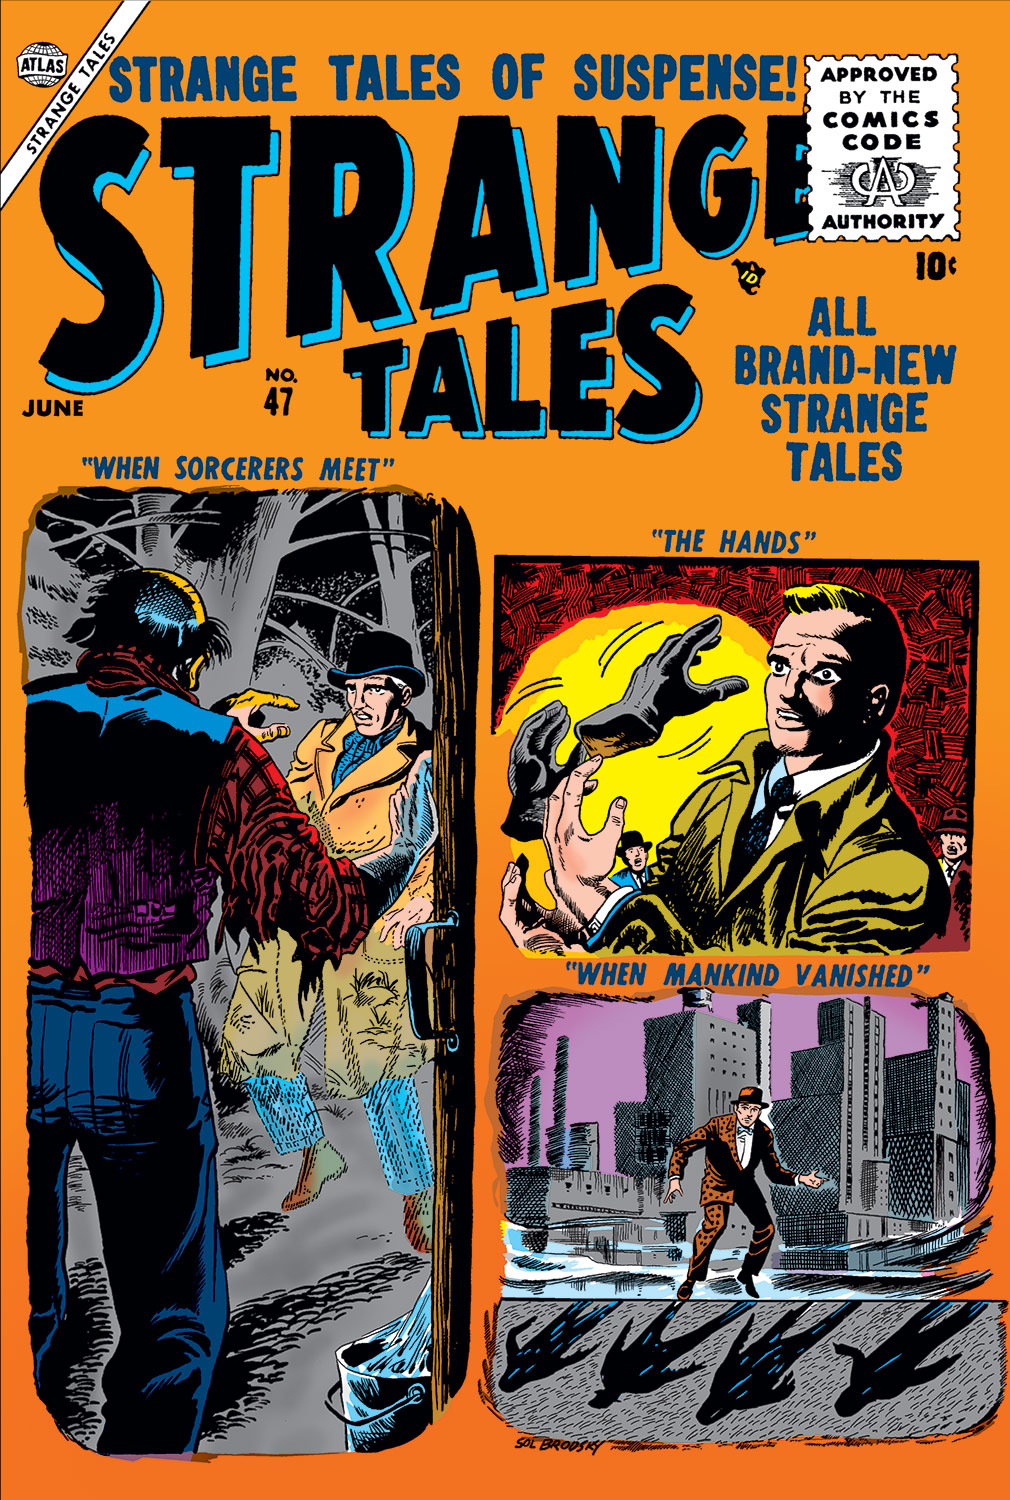 Strange Tales (1951) #47